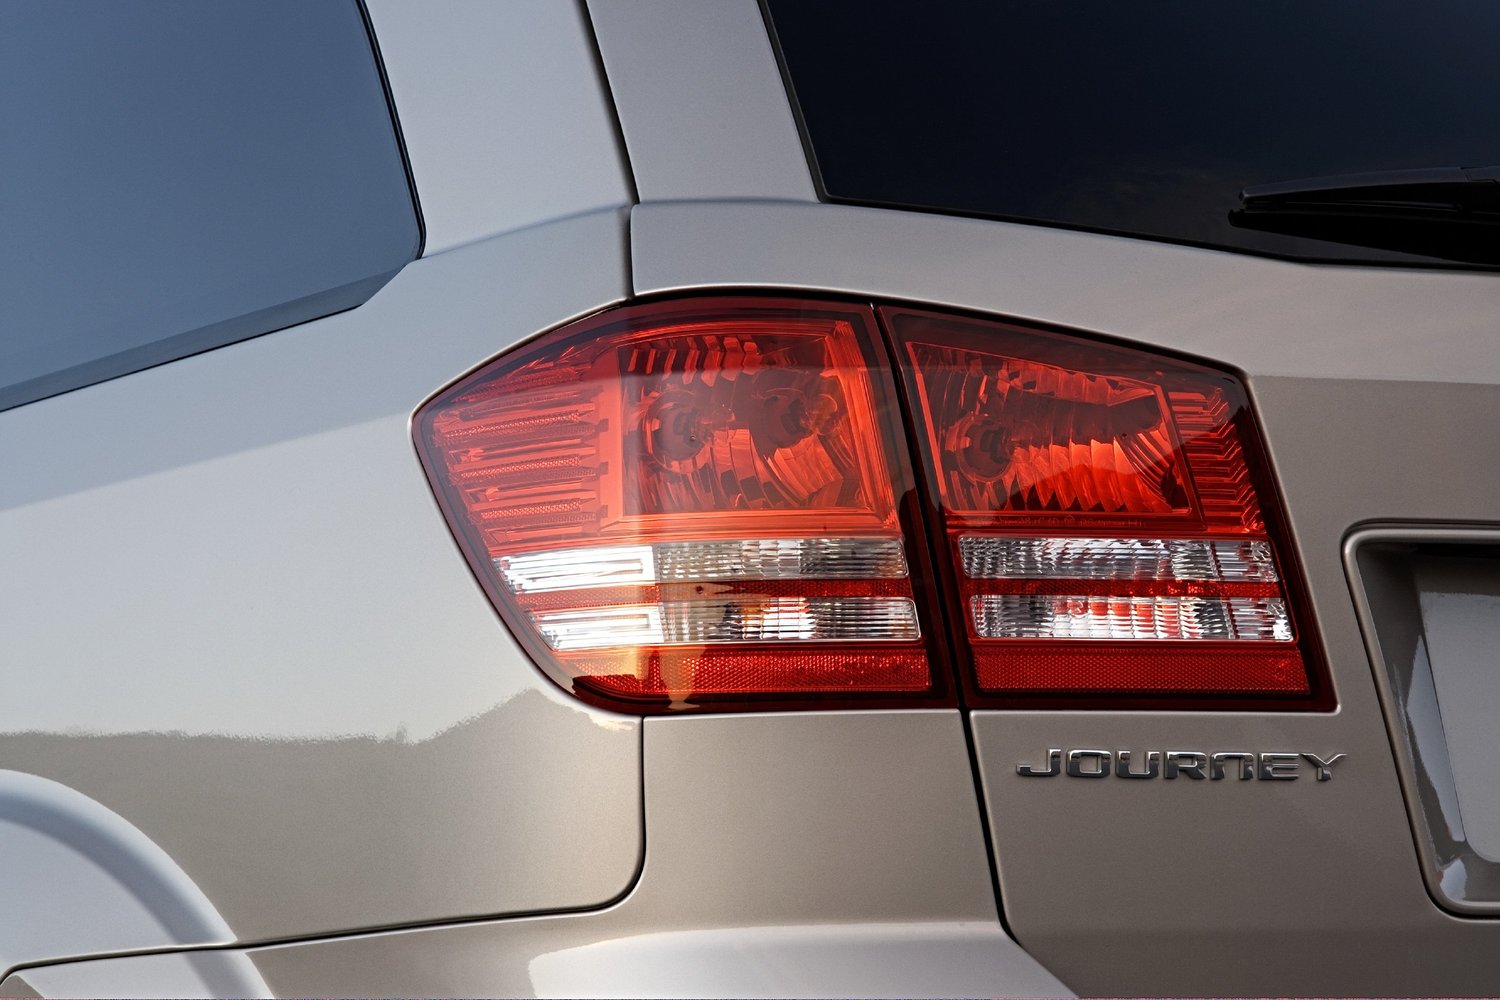 кроссовер Dodge Journey 2008 - 2016г выпуска модификация 3.6 AT (283 л.с.)